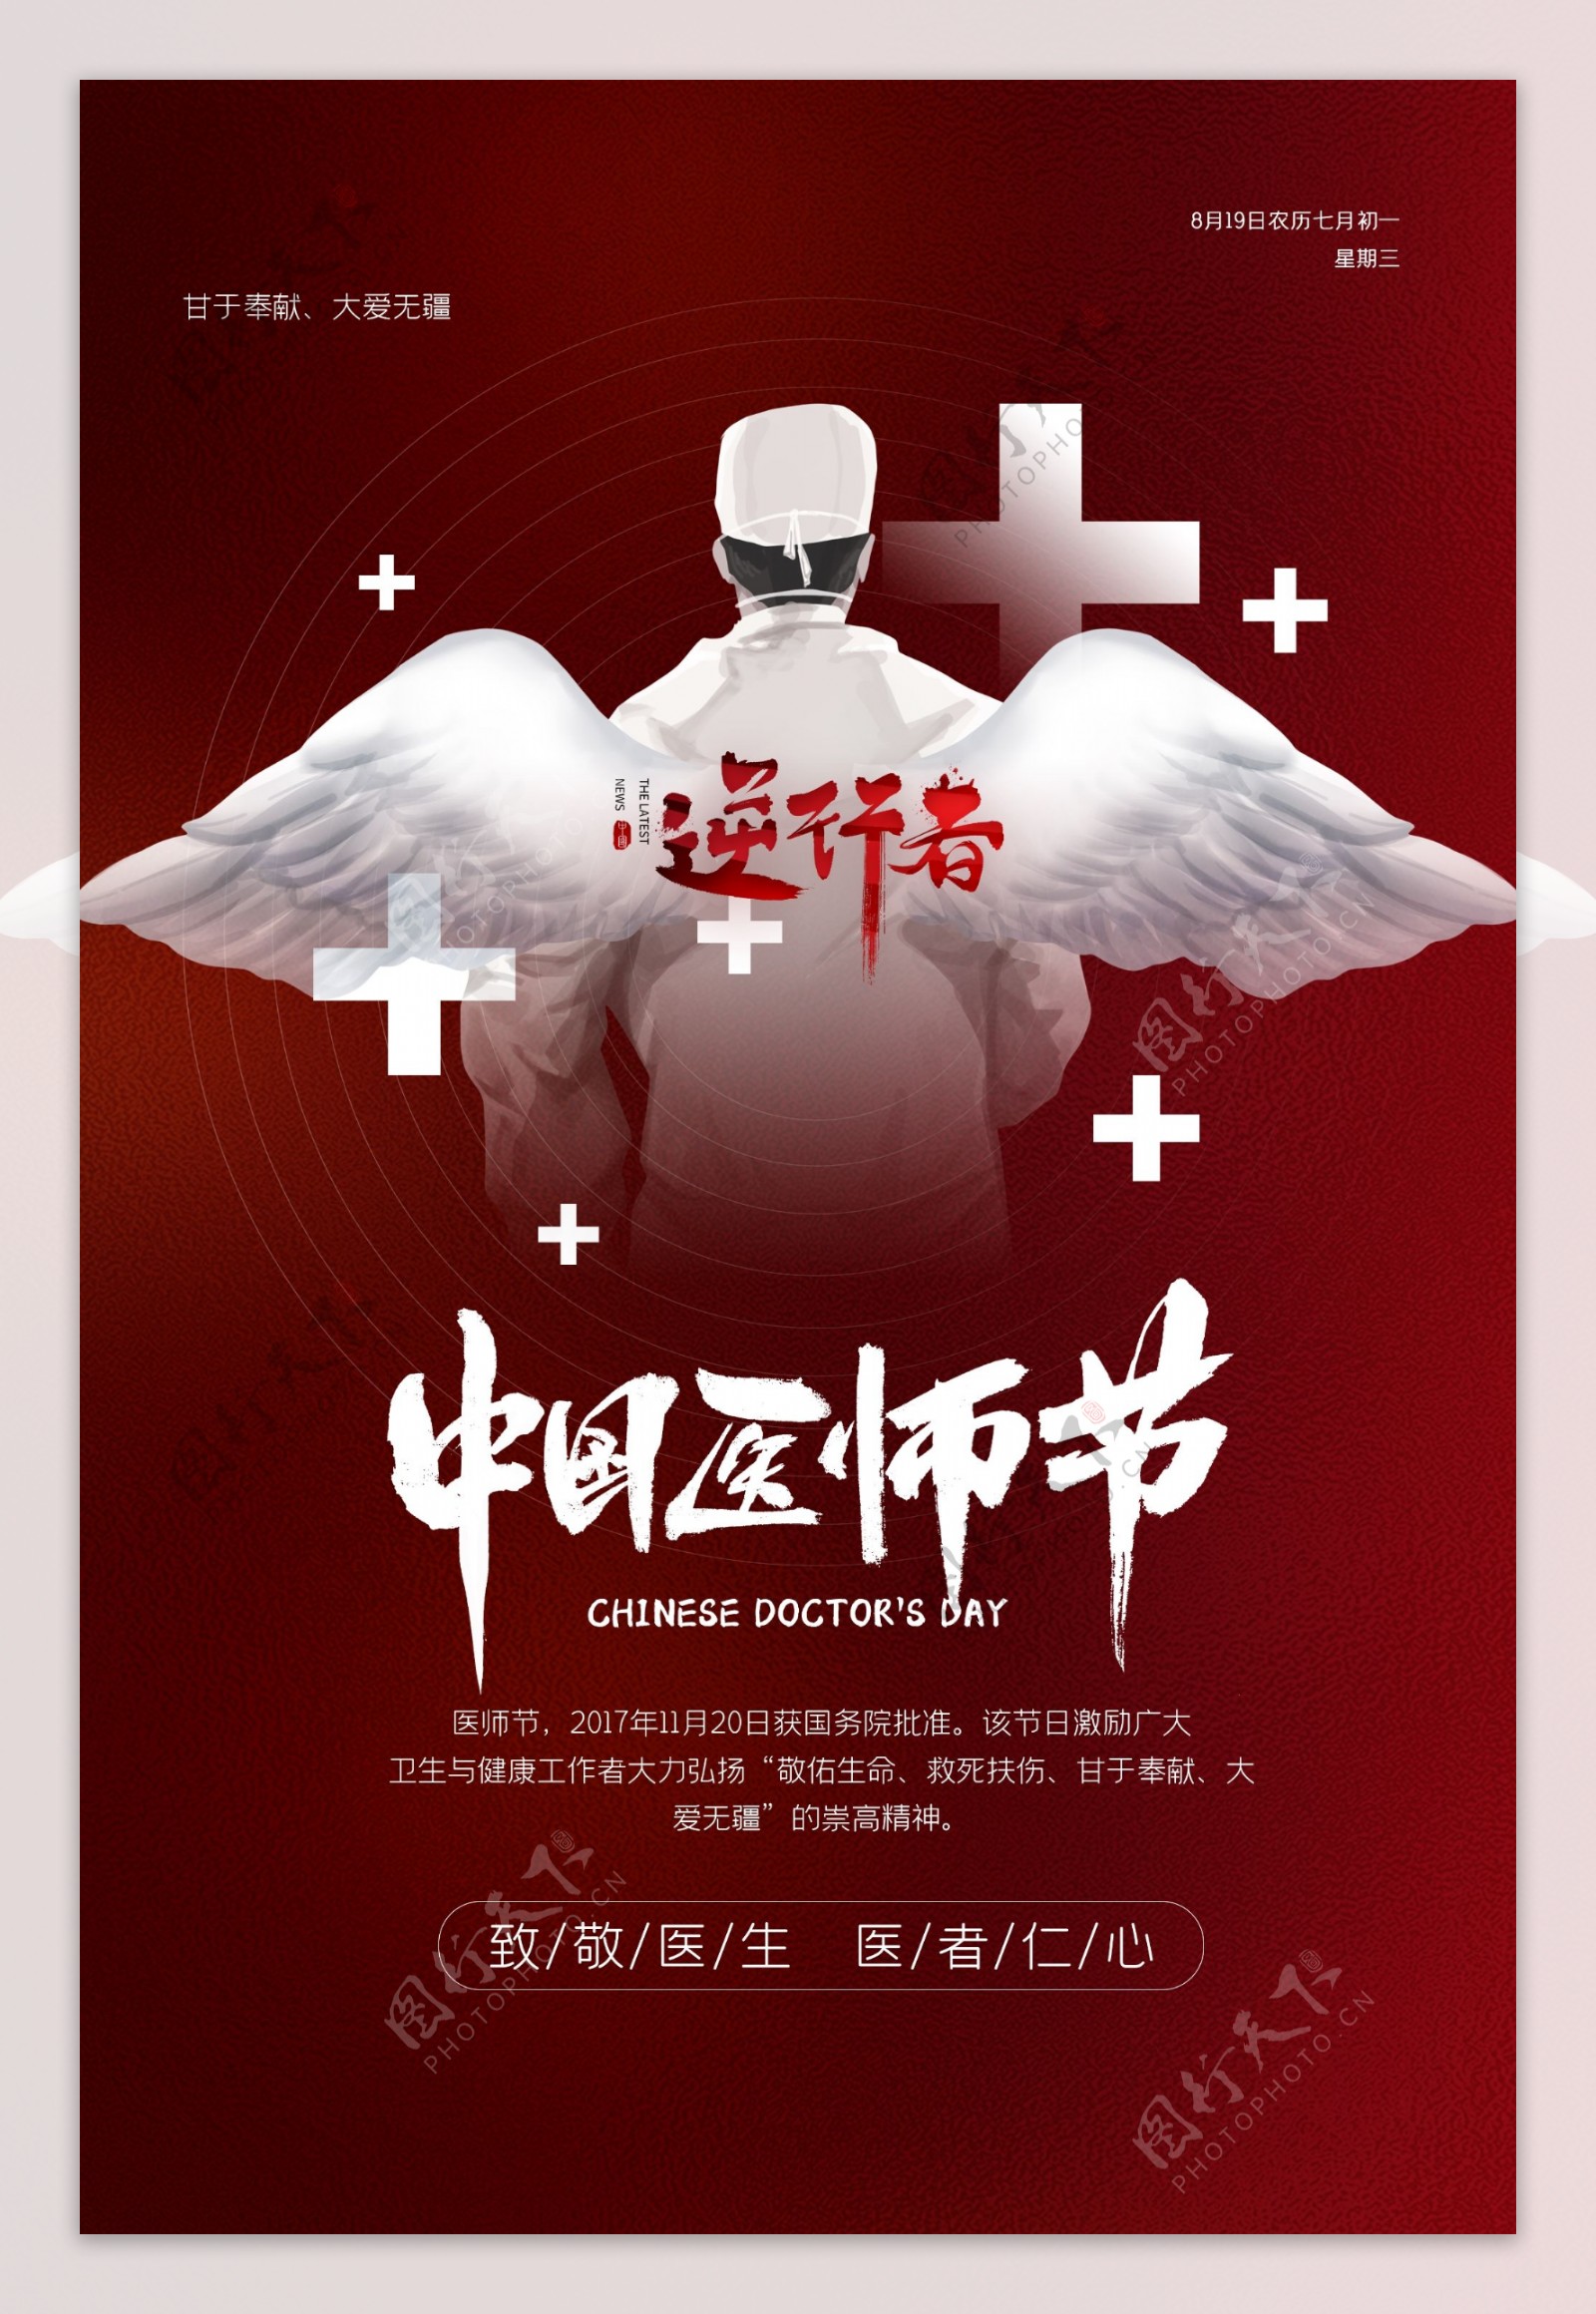 医师节传统节日宣传活动海报素材